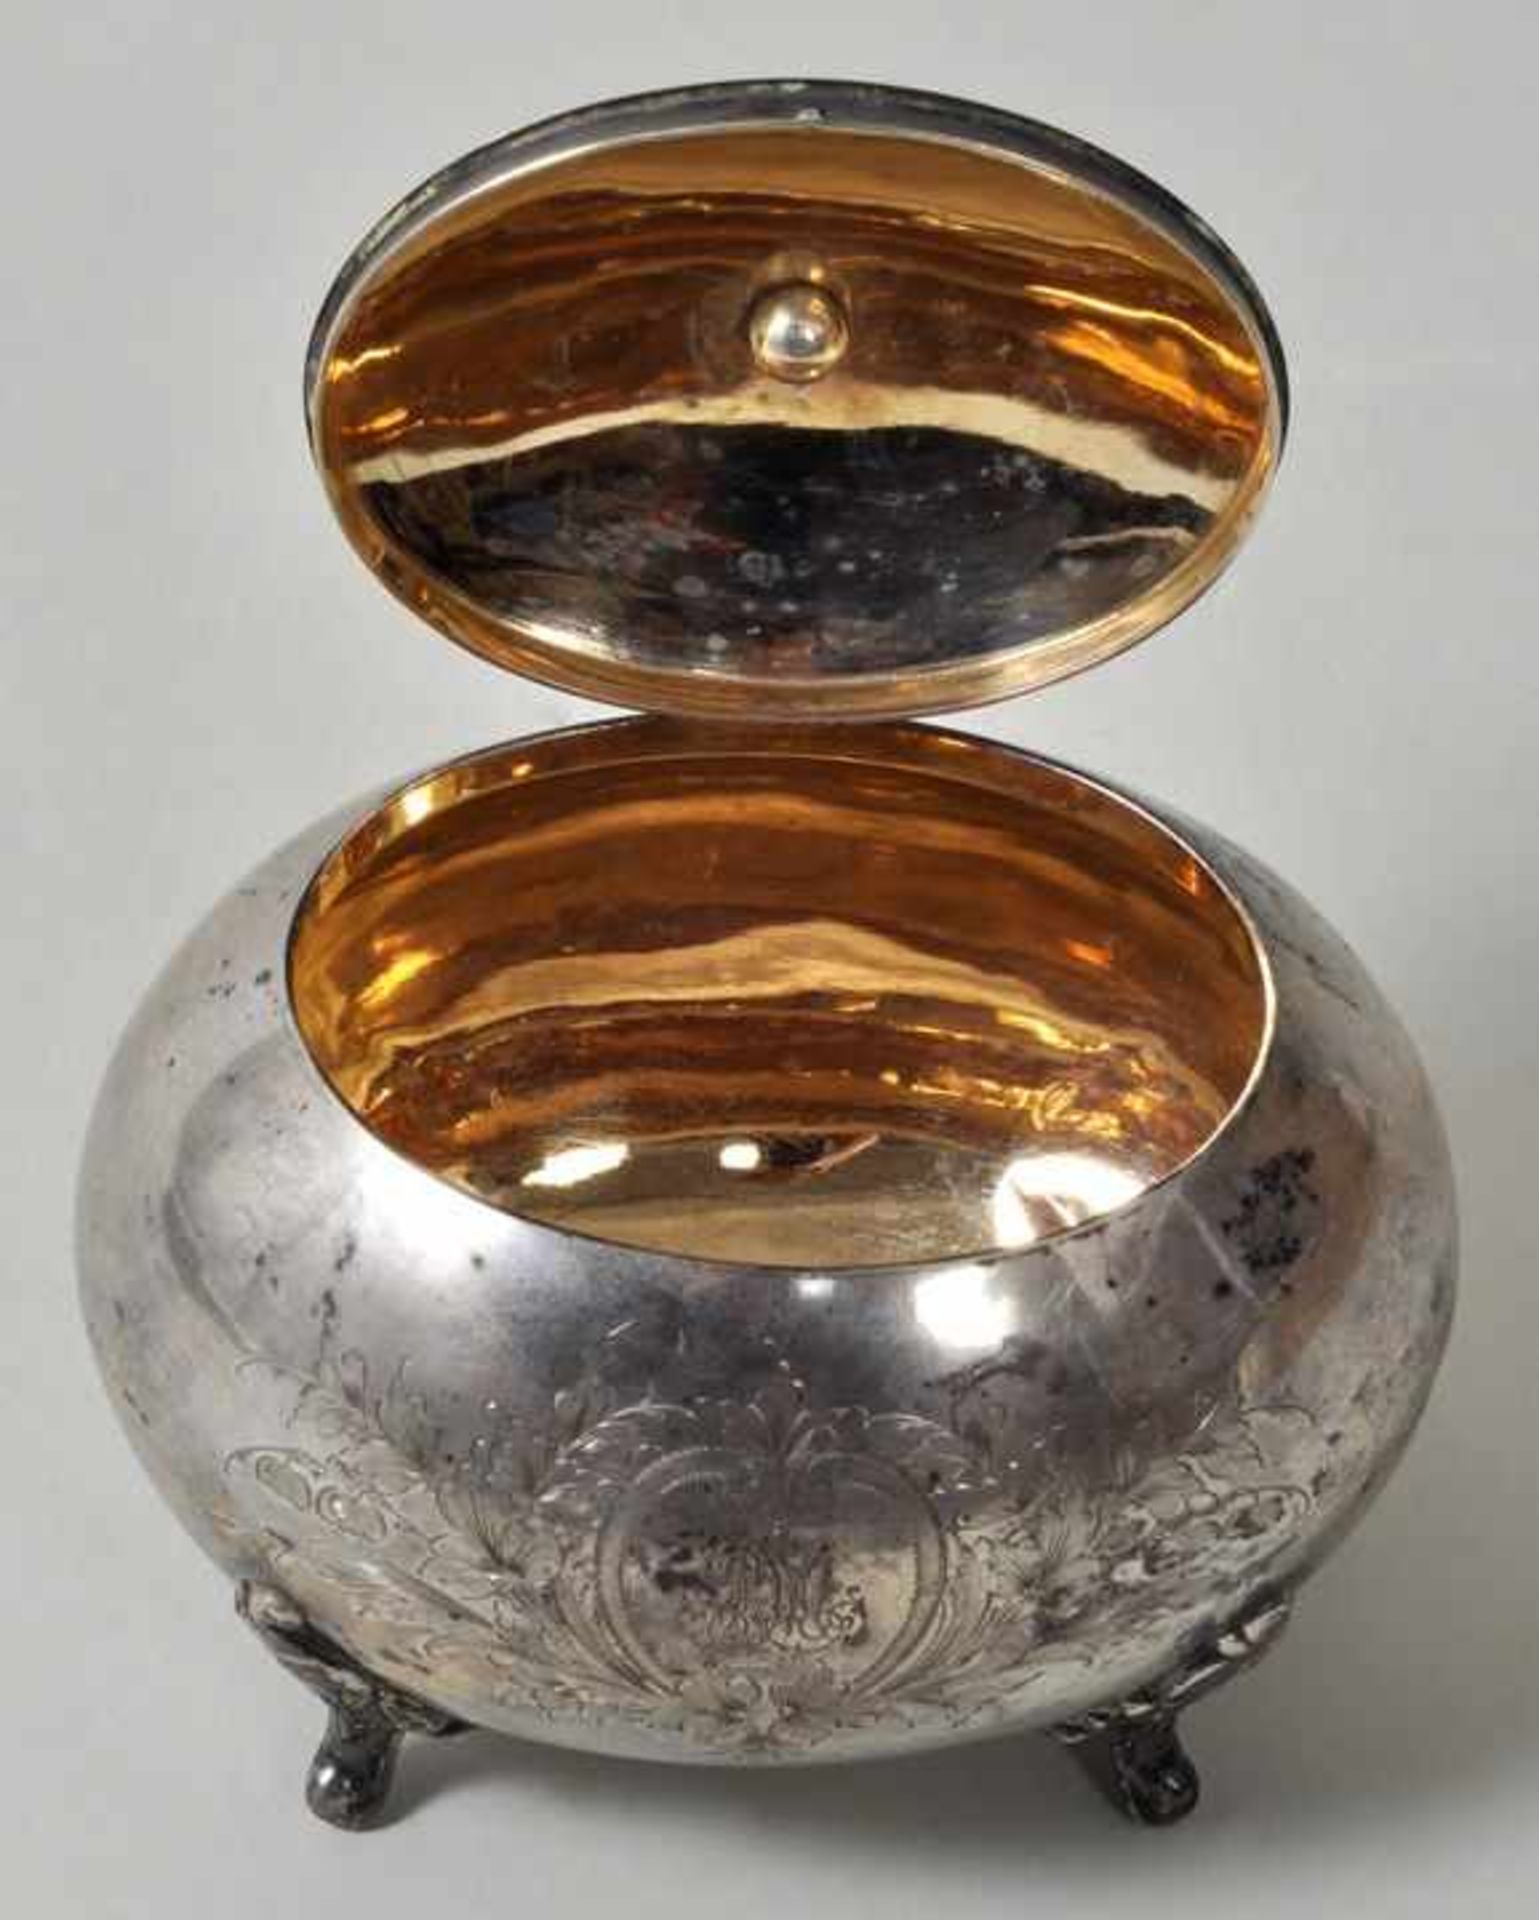 Zuckerkasten, Dtl., Ende 19. Jh. Silber 800, Innenvergoldung, eiförmiger Korpus auf vier Füßchen, - Bild 2 aus 3